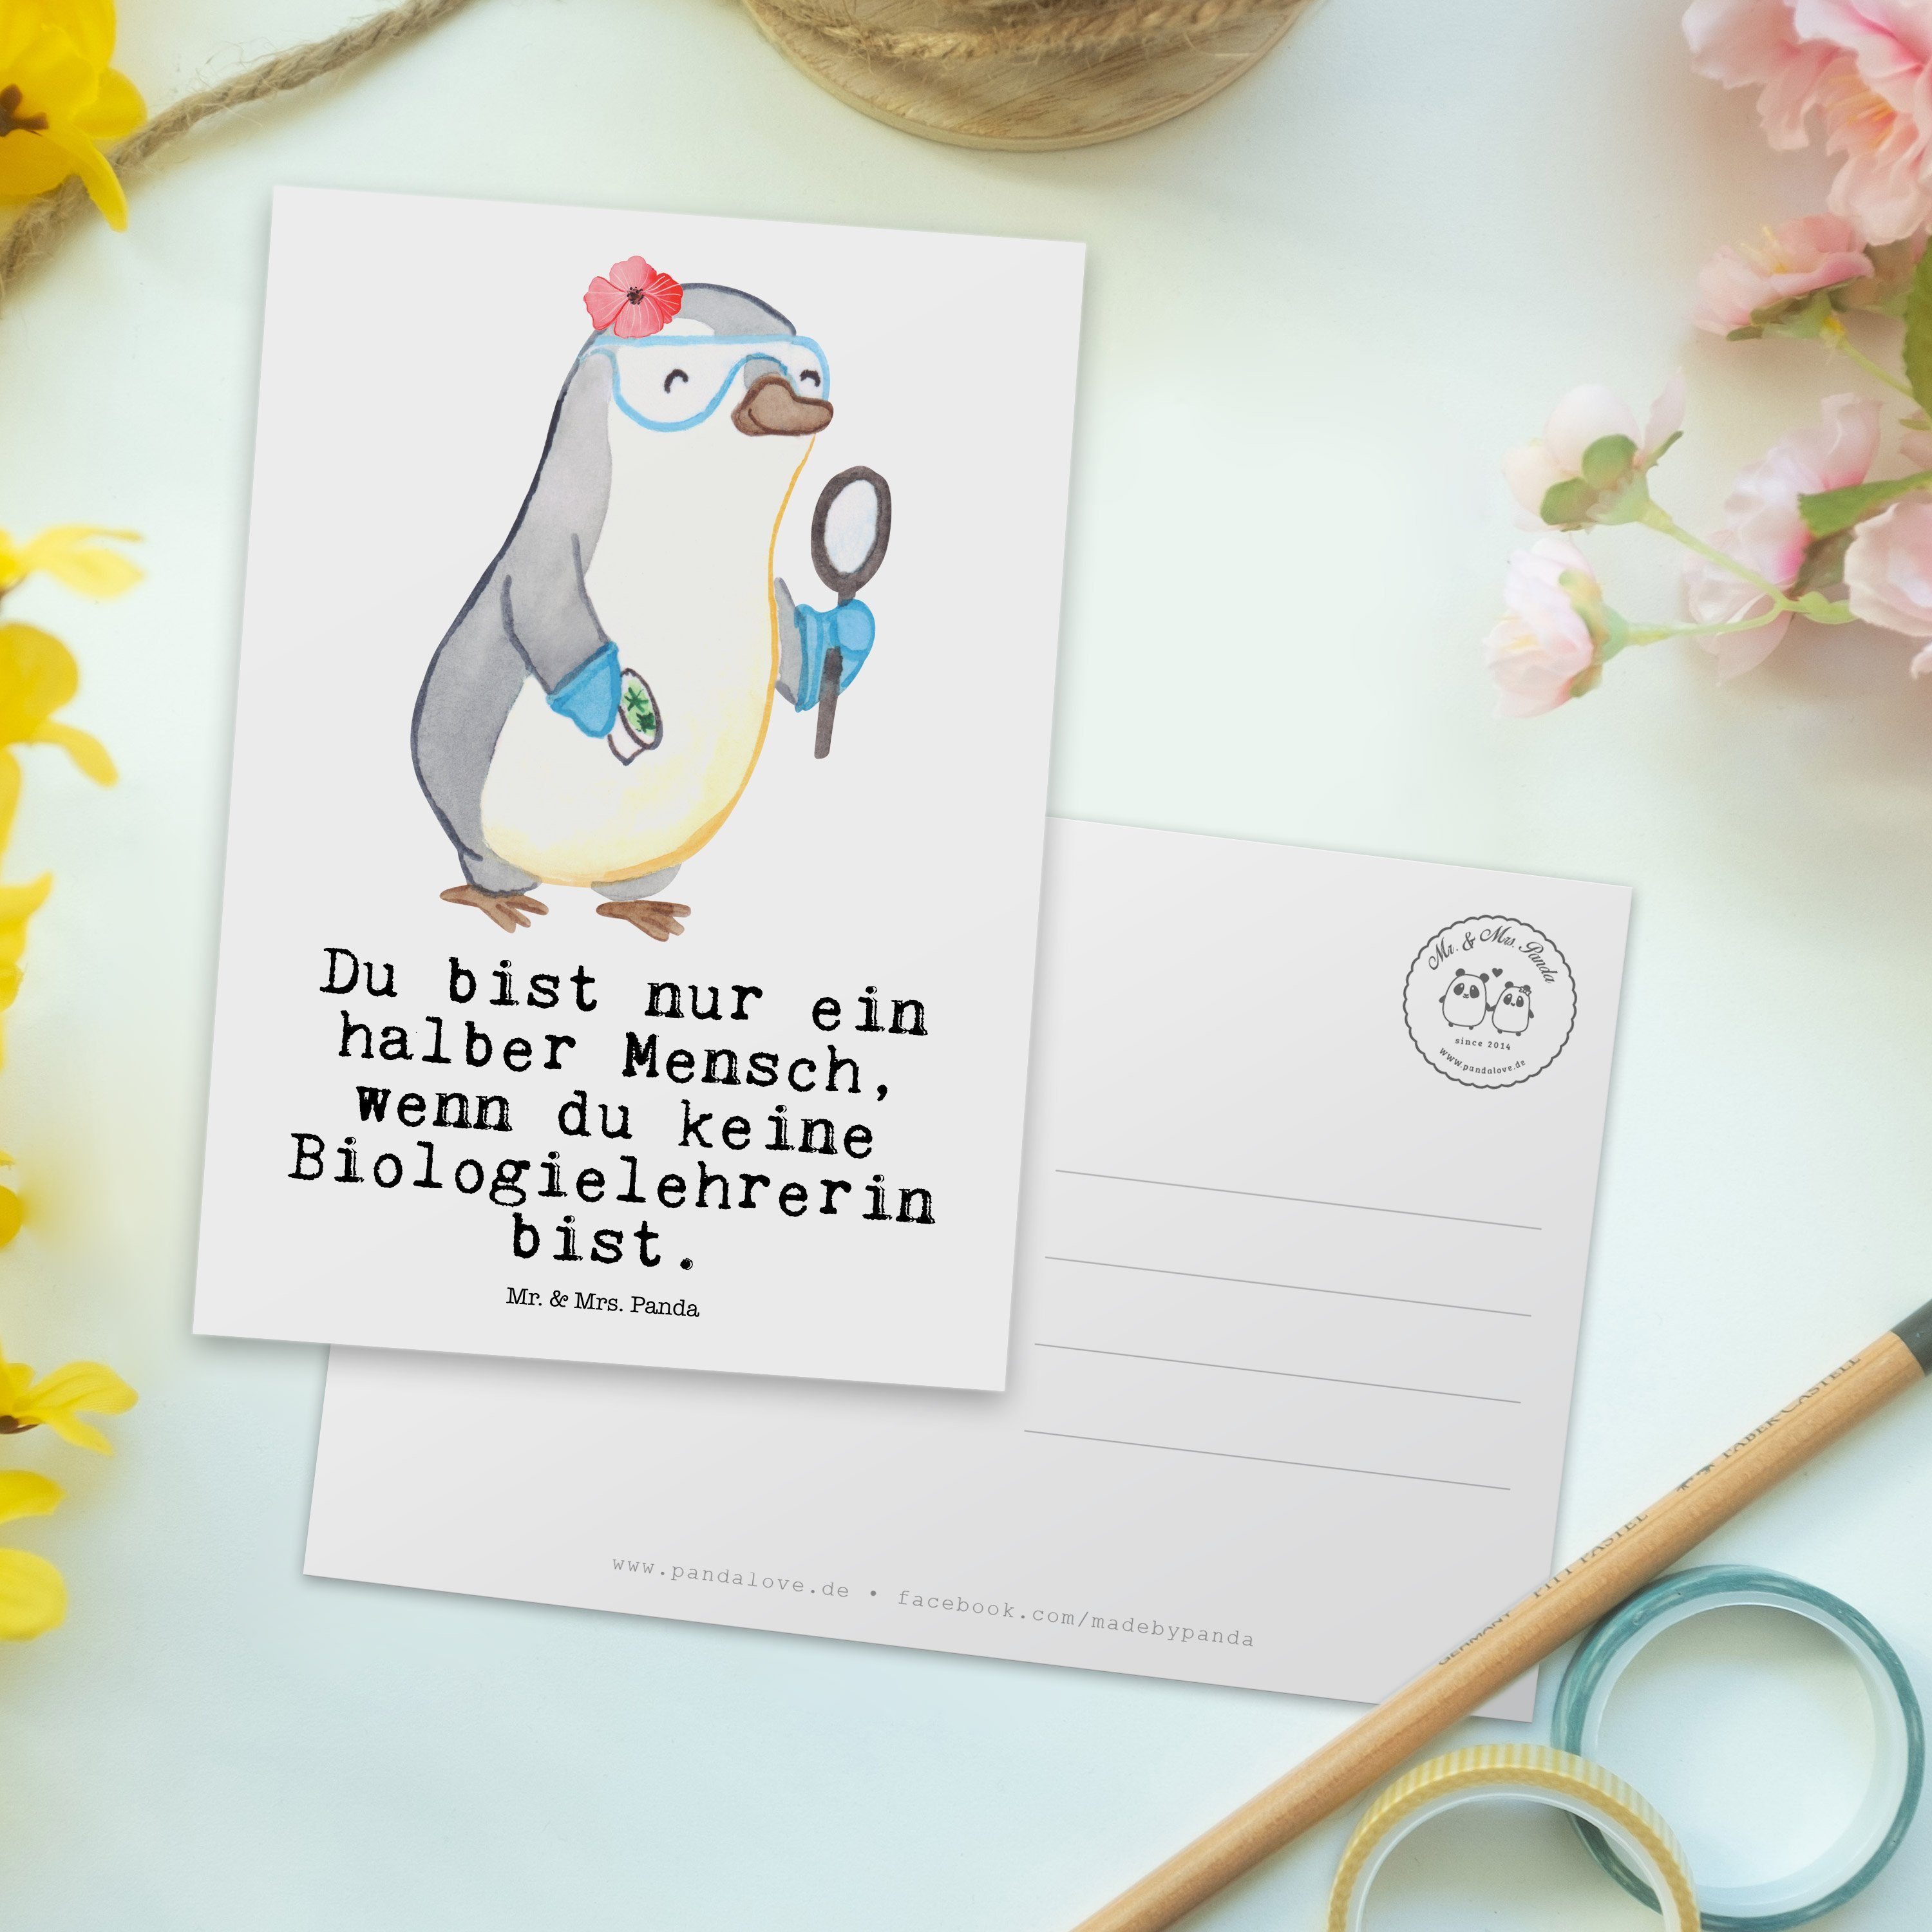 Mrs. & Einladung, Danke - Mr. Postkarte Weiß Schule, Panda Herz Geschenk, mit Biologielehrerin -